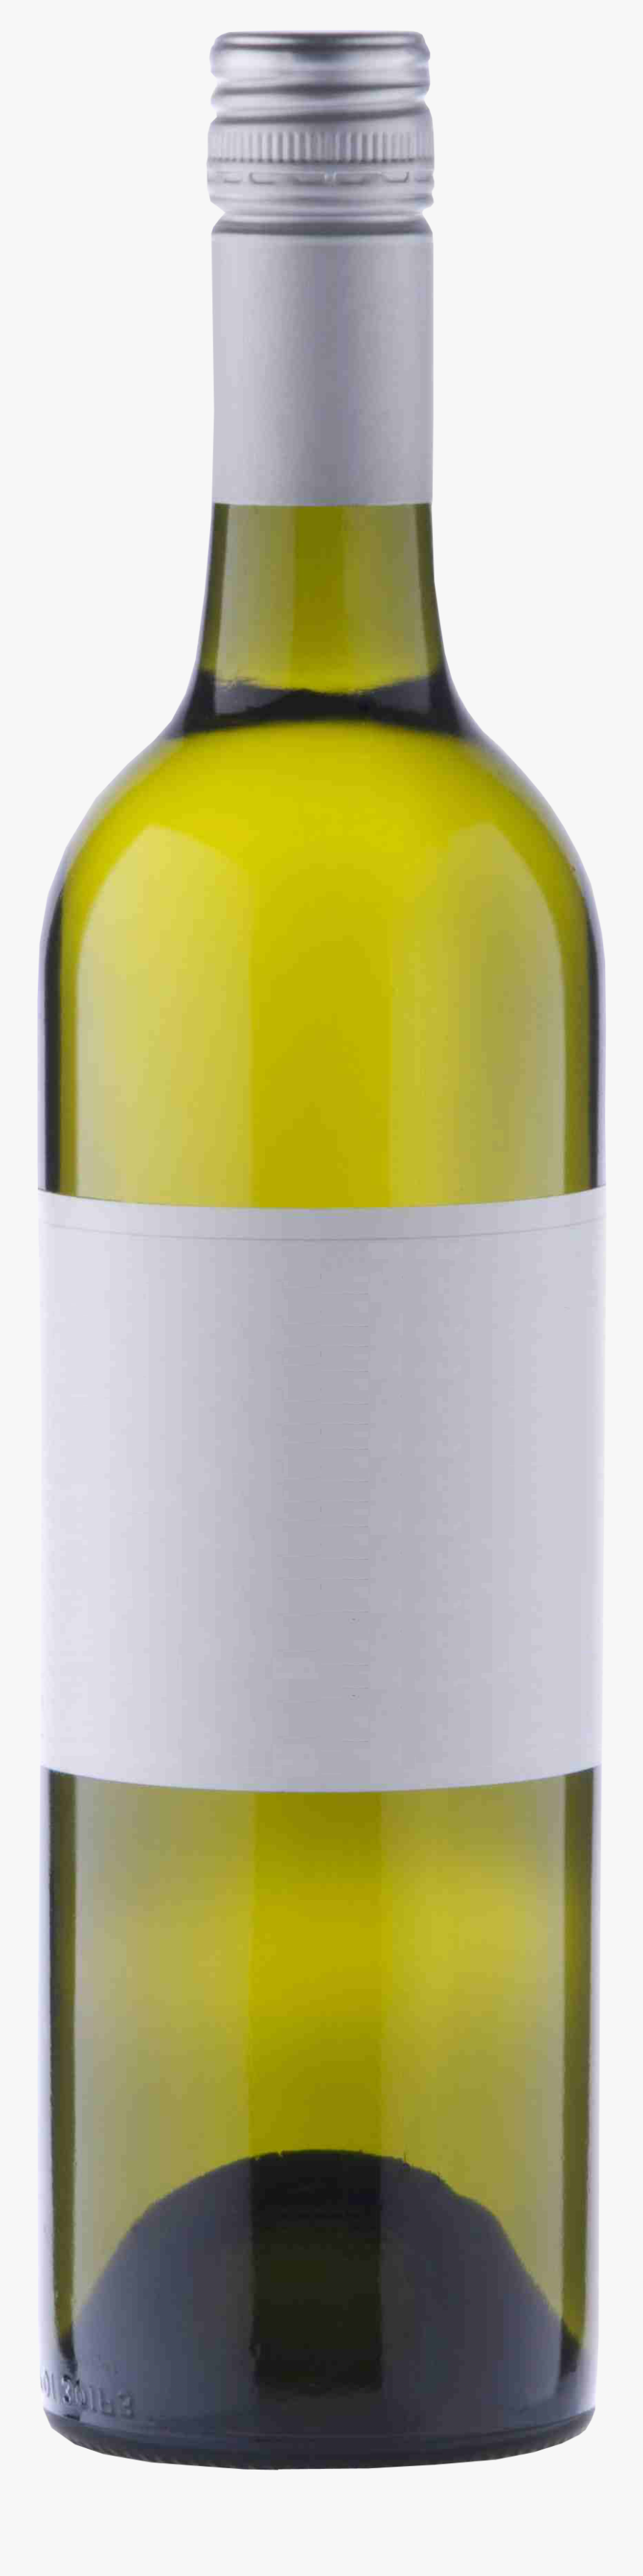 Wine Bottle Transparent Png, Transparent Clipart